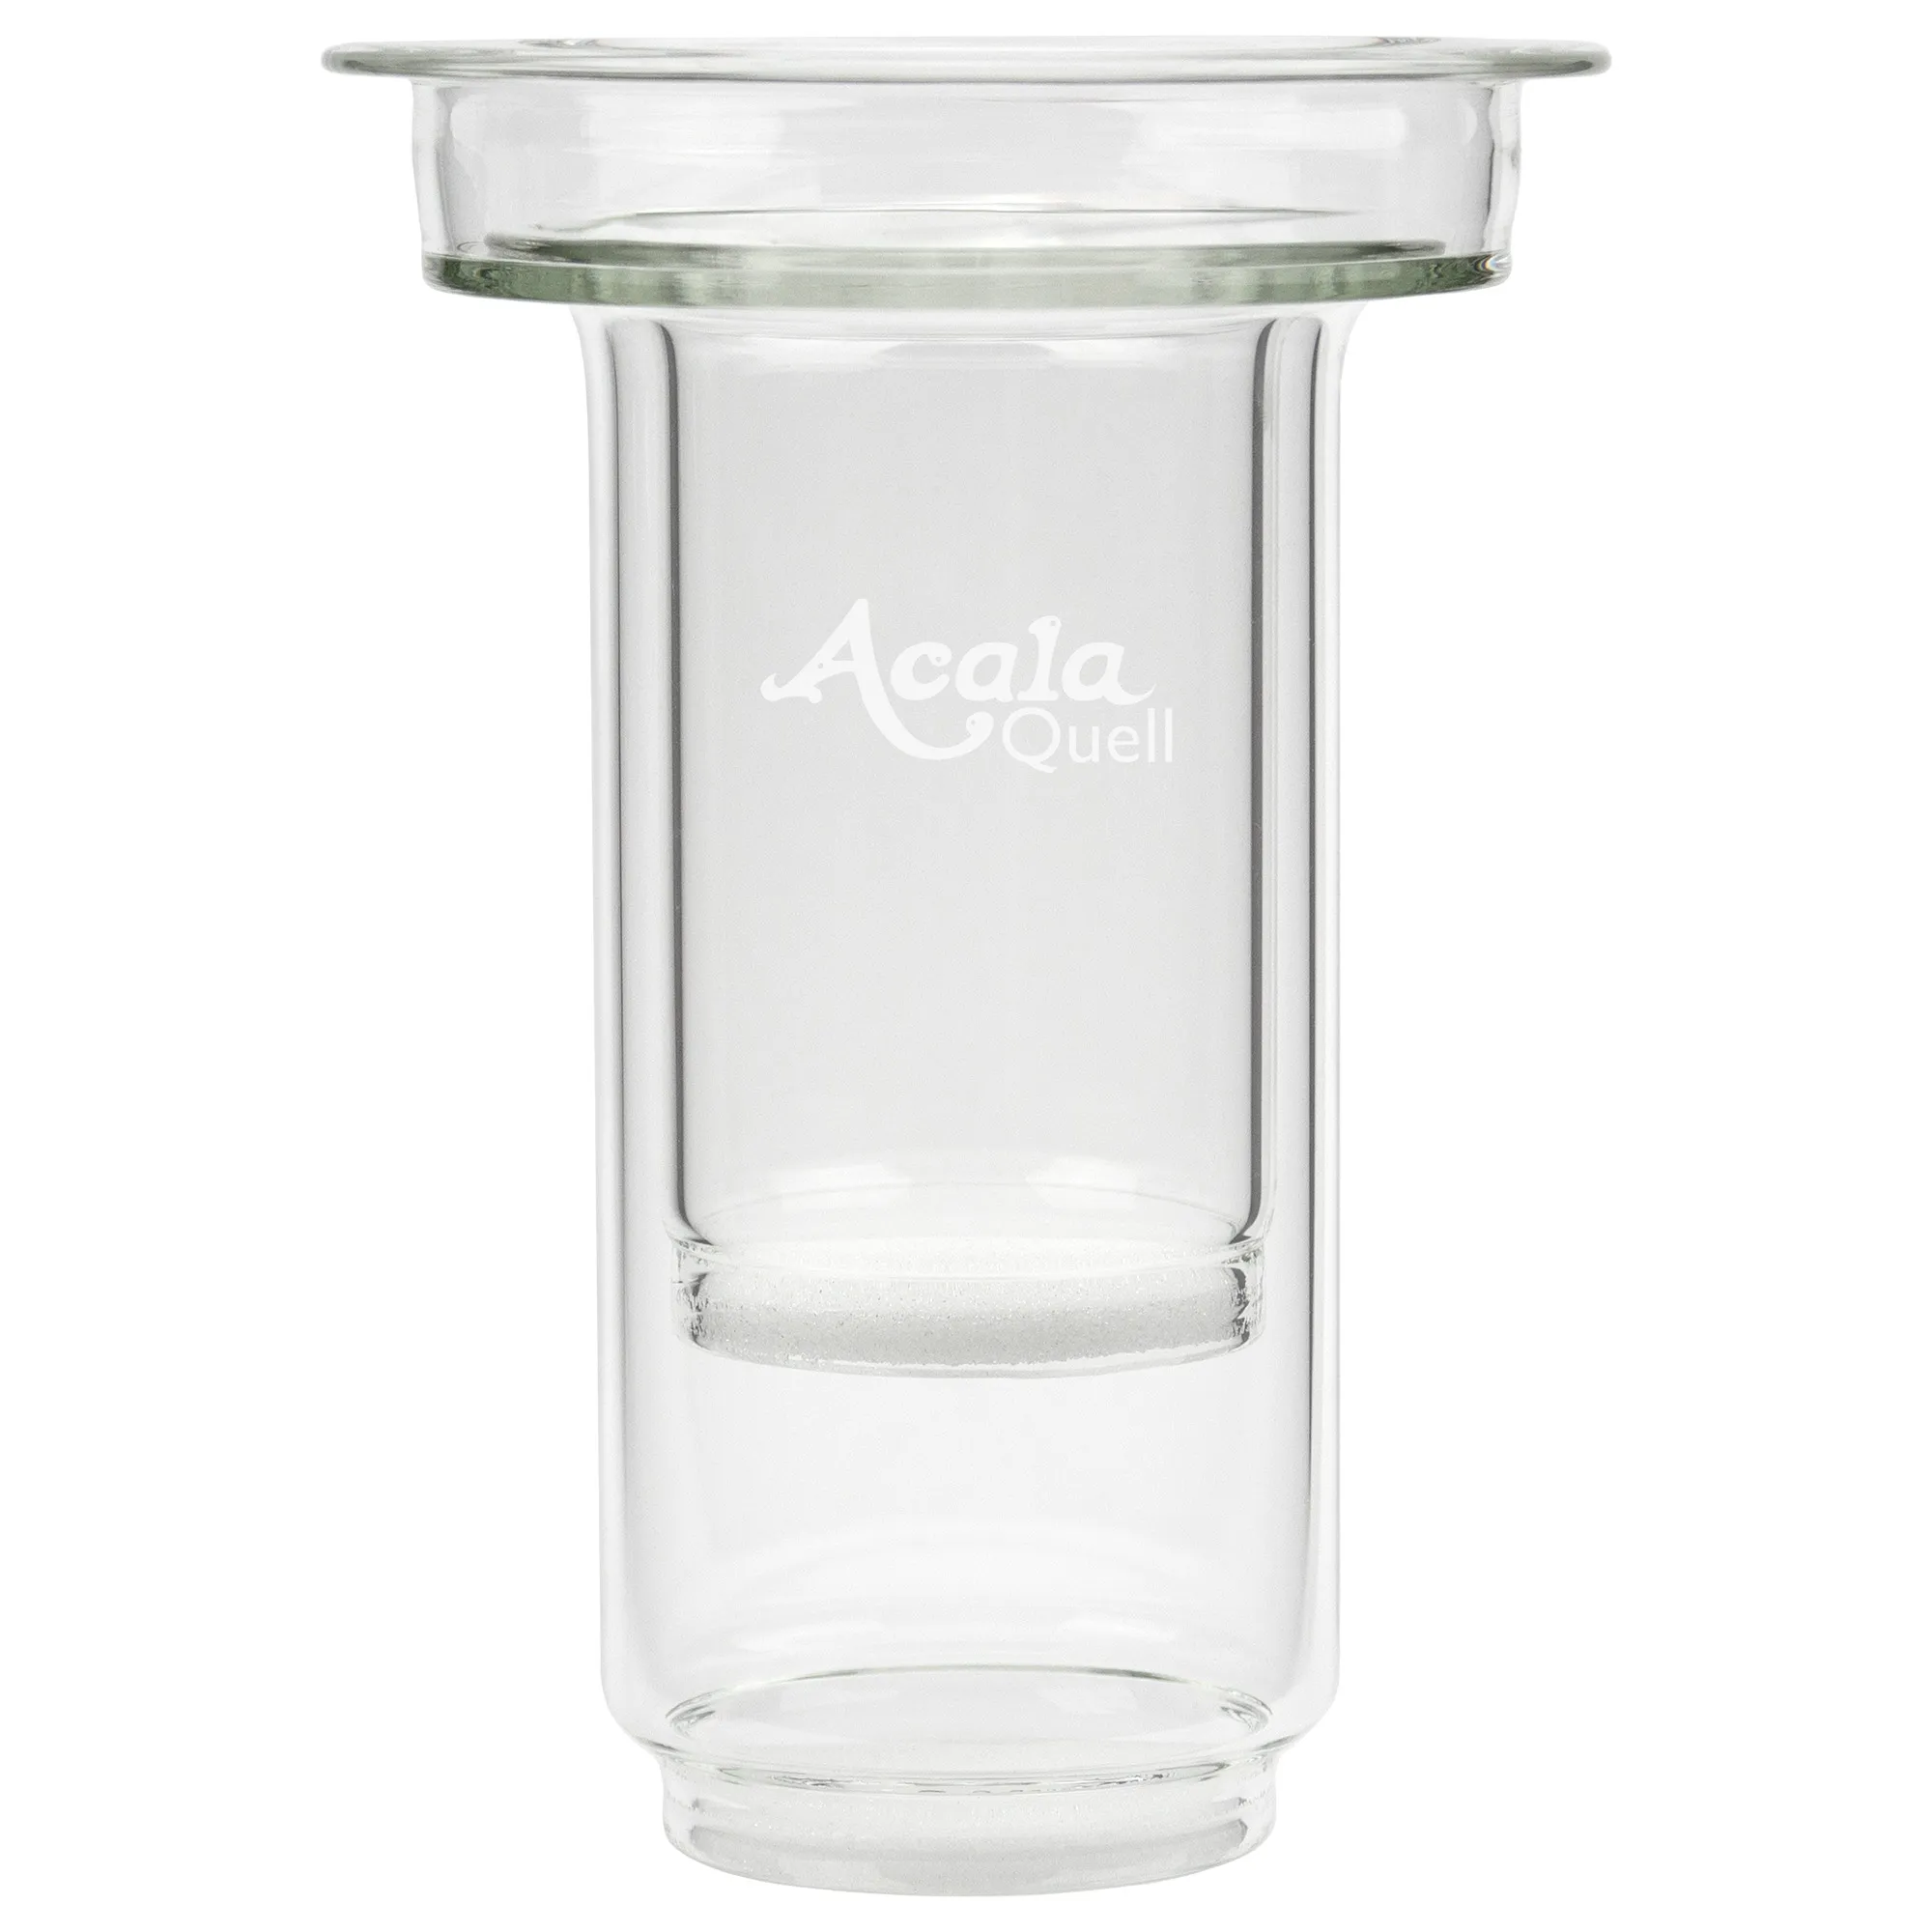 Man sieht die AcalaQuell Glaskartusche vor weißem Hintergrund. Das Glas ist kristallklar, vorne ist klein das Acala Logo eingraviert.